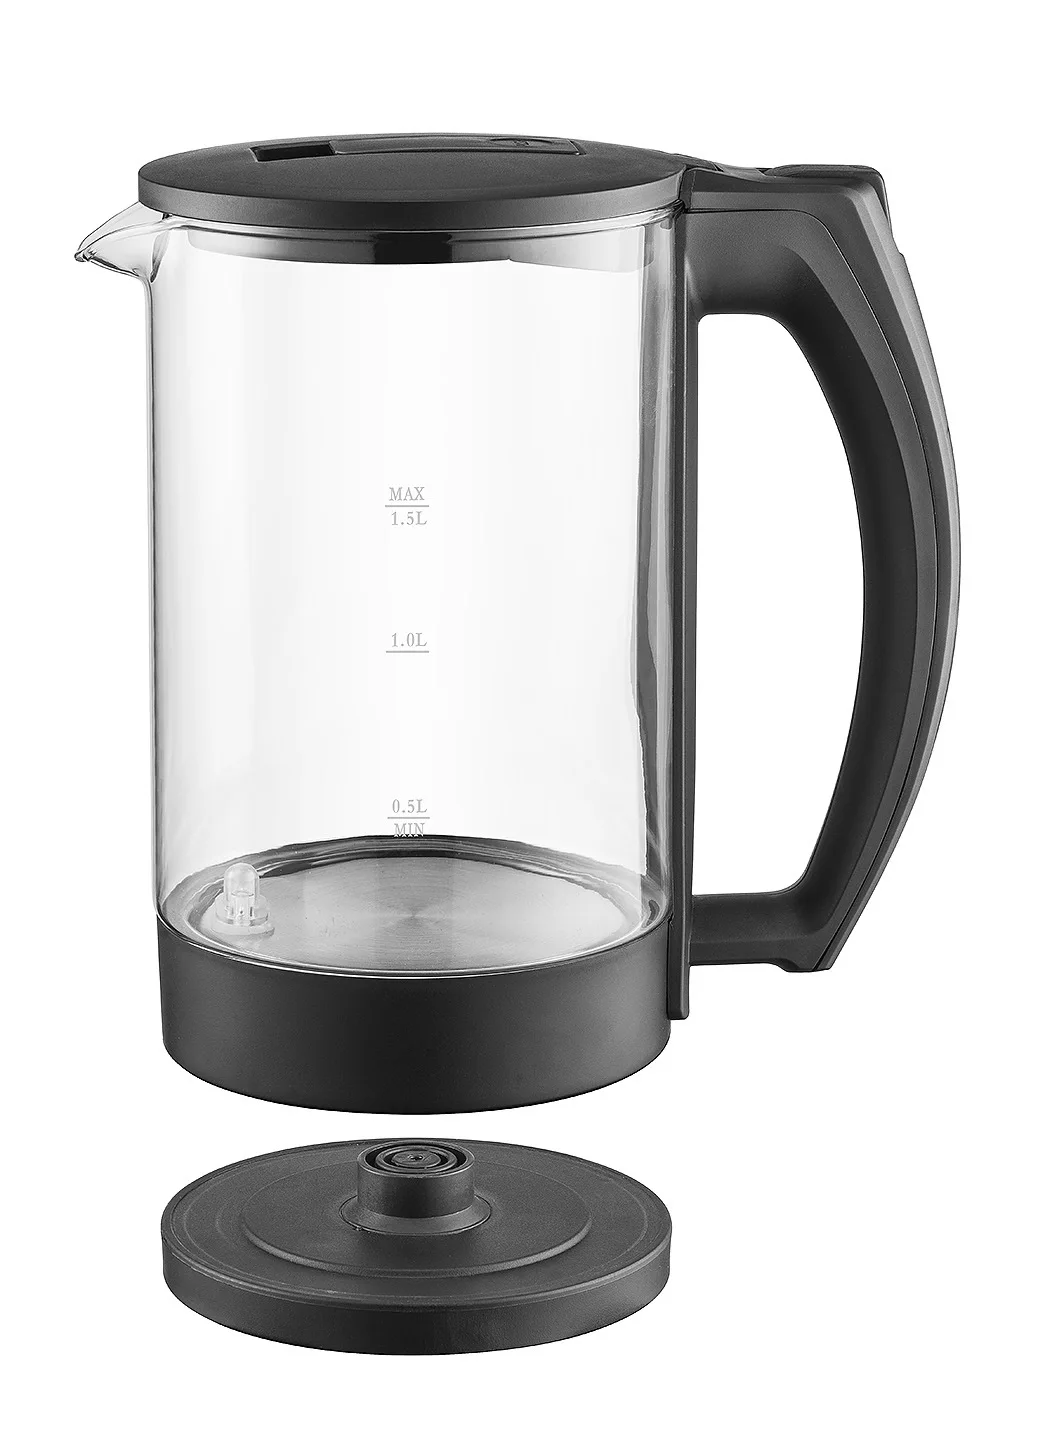 1.5L чайник для воды стеклянный ручной мгновенный нагрев Электрический чайник для воды Автоматическая защита от помех проводной чайник FY-588A